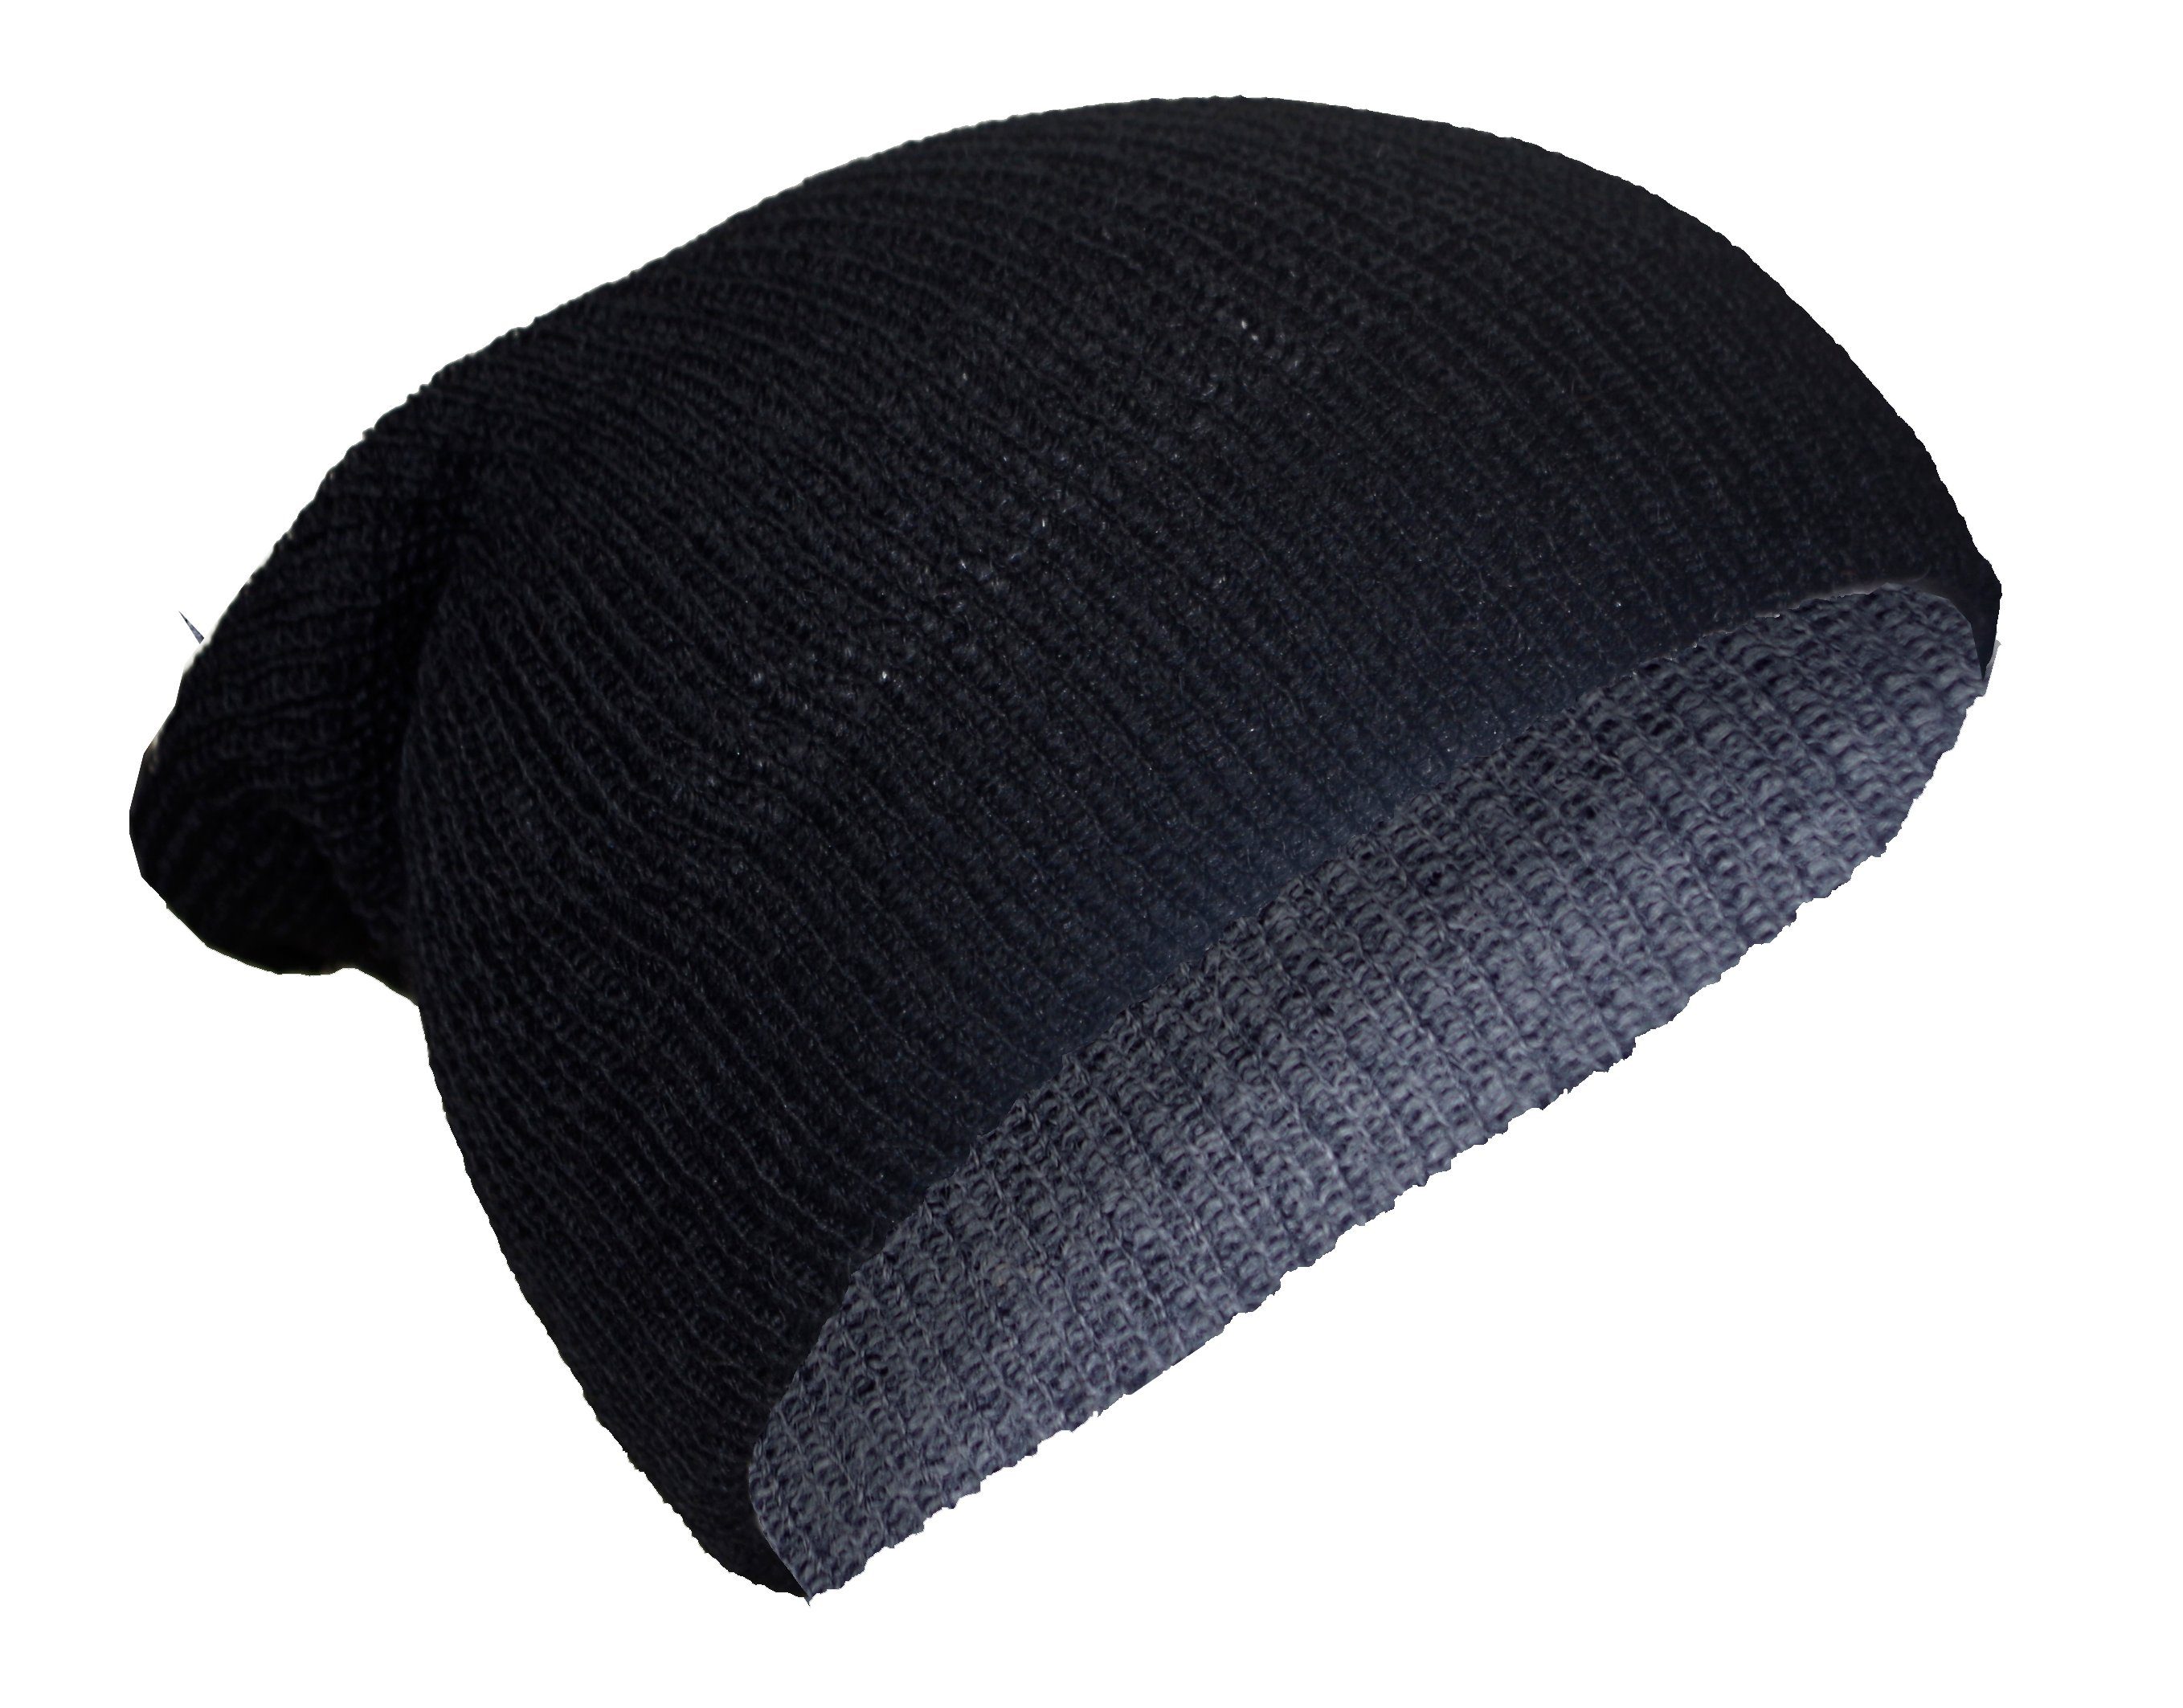 Posh Gear grau 100% Mütze schwarz aus Rettolana Alpakawolle Alpaka Strickmütze 